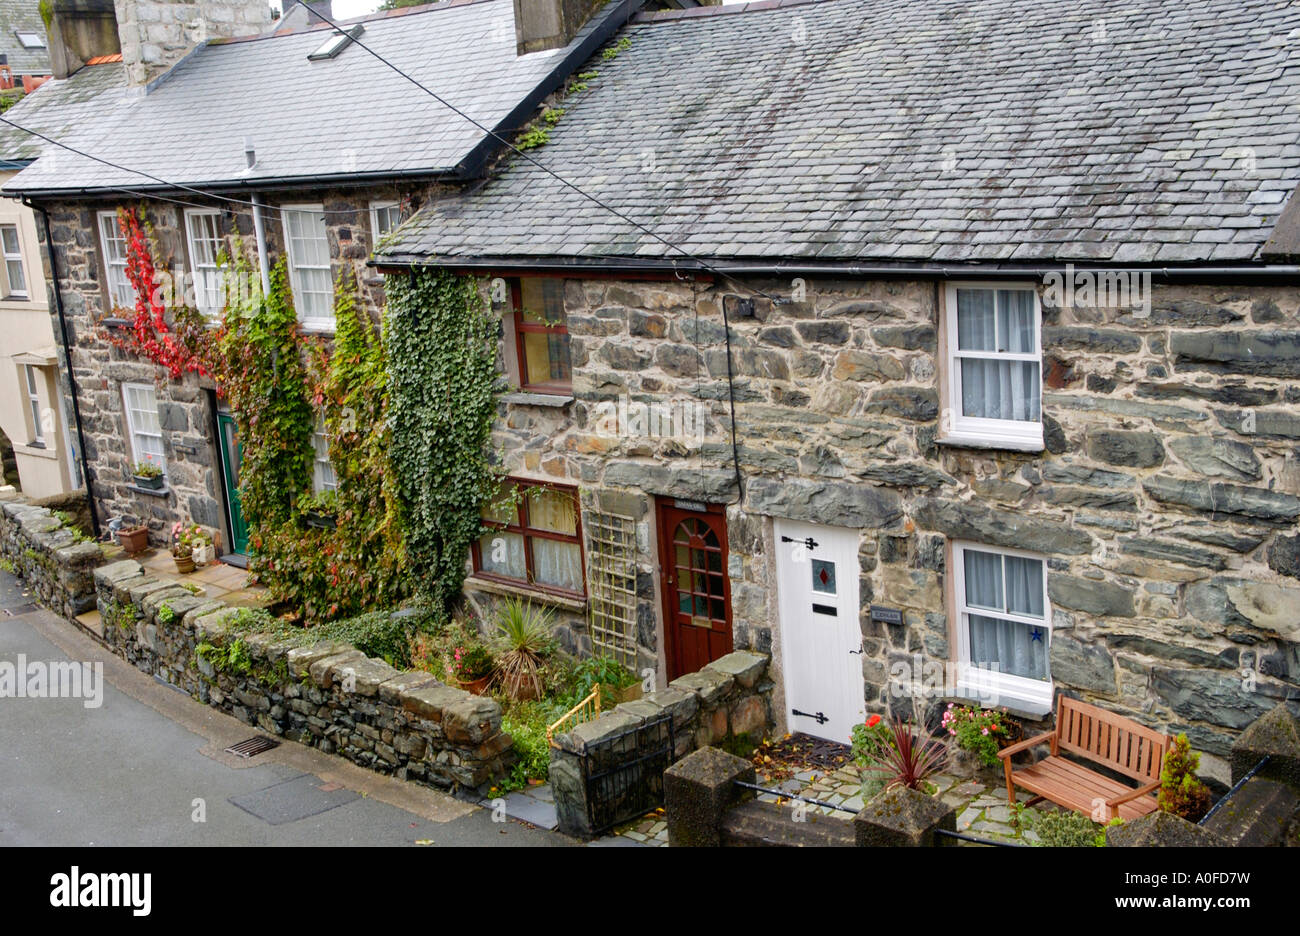 Terraza de piedra tradicional construido casas adosadas típicas de la región en Harlech Gwynedd North Wales UK Foto de stock